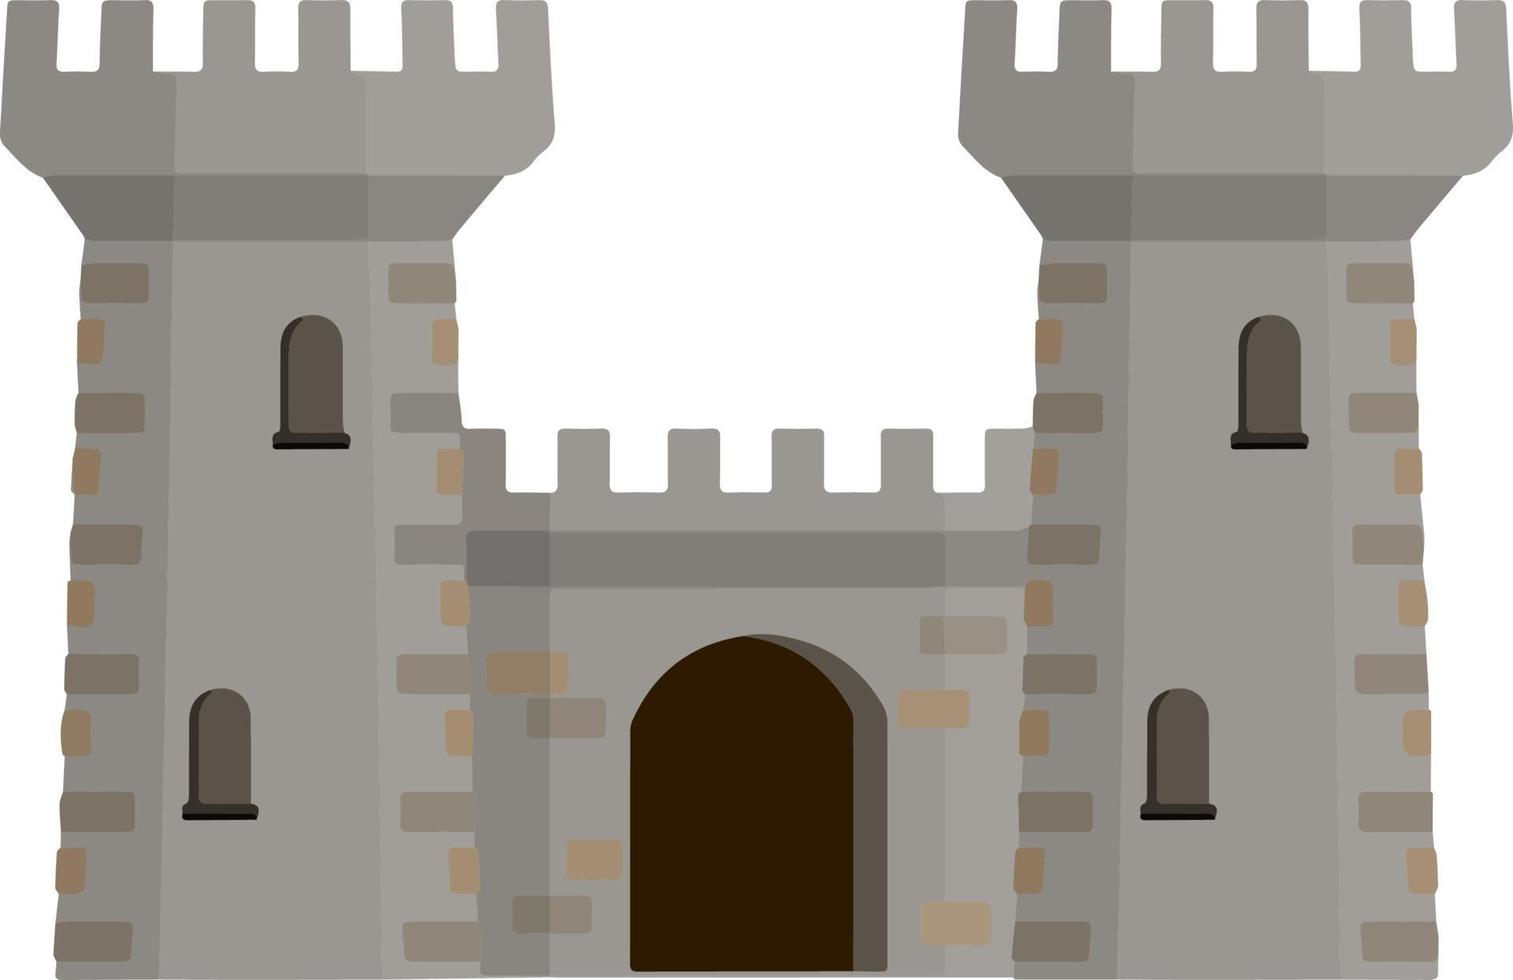 castillo de piedra europeo medieval. fortaleza del caballero. concepto de seguridad, protección y defensa. ilustración plana de dibujos animados. edificio militar con murallas, puertas y gran torre. vector